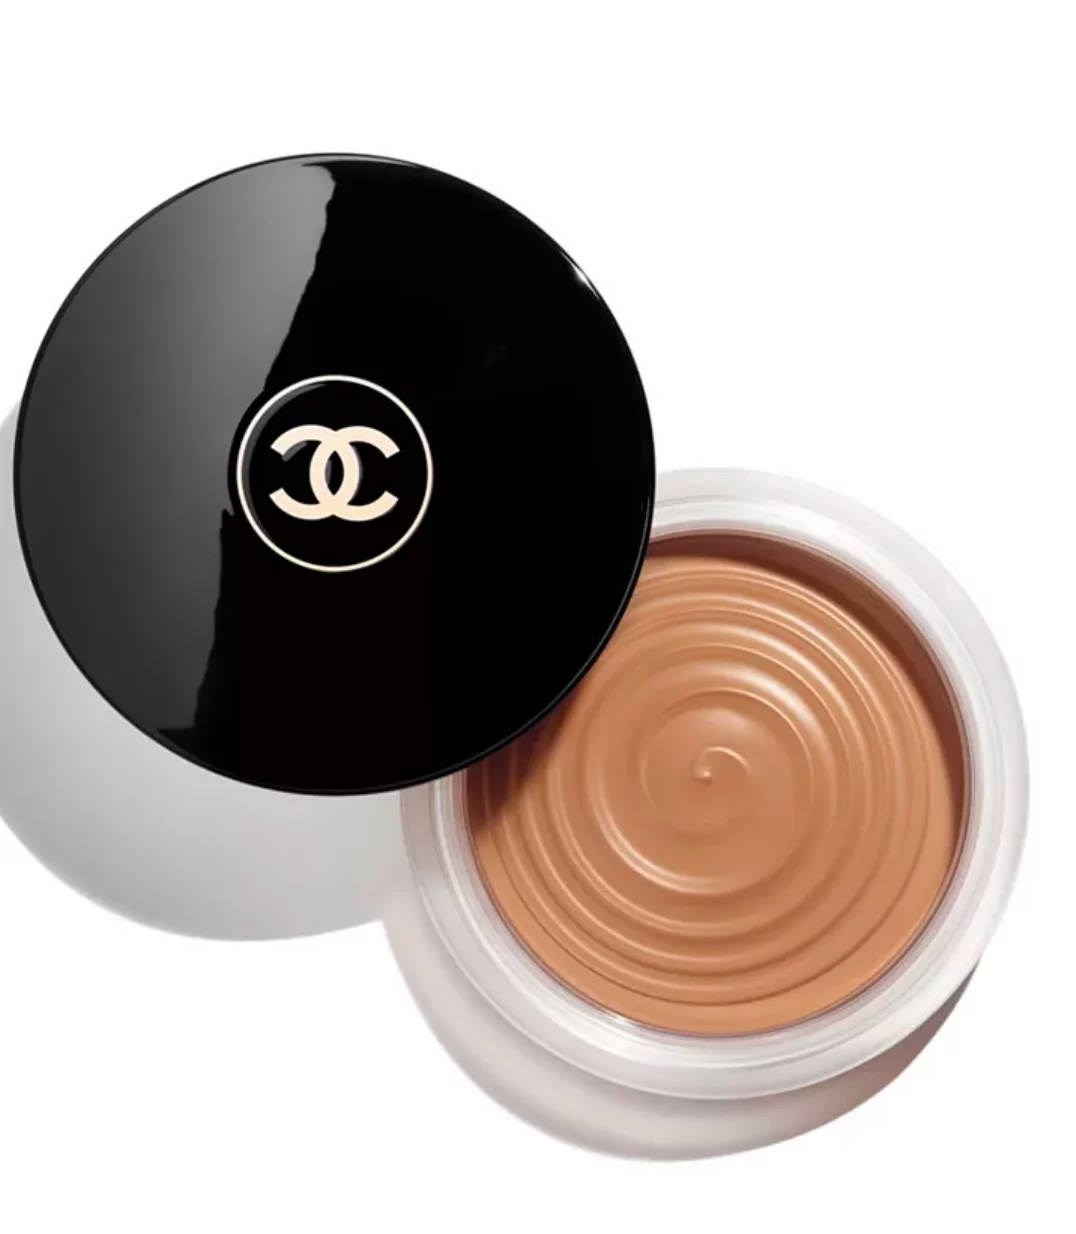 Chanel Les Beiges Healthy Glow Bronzing Cream, best cream bronzer